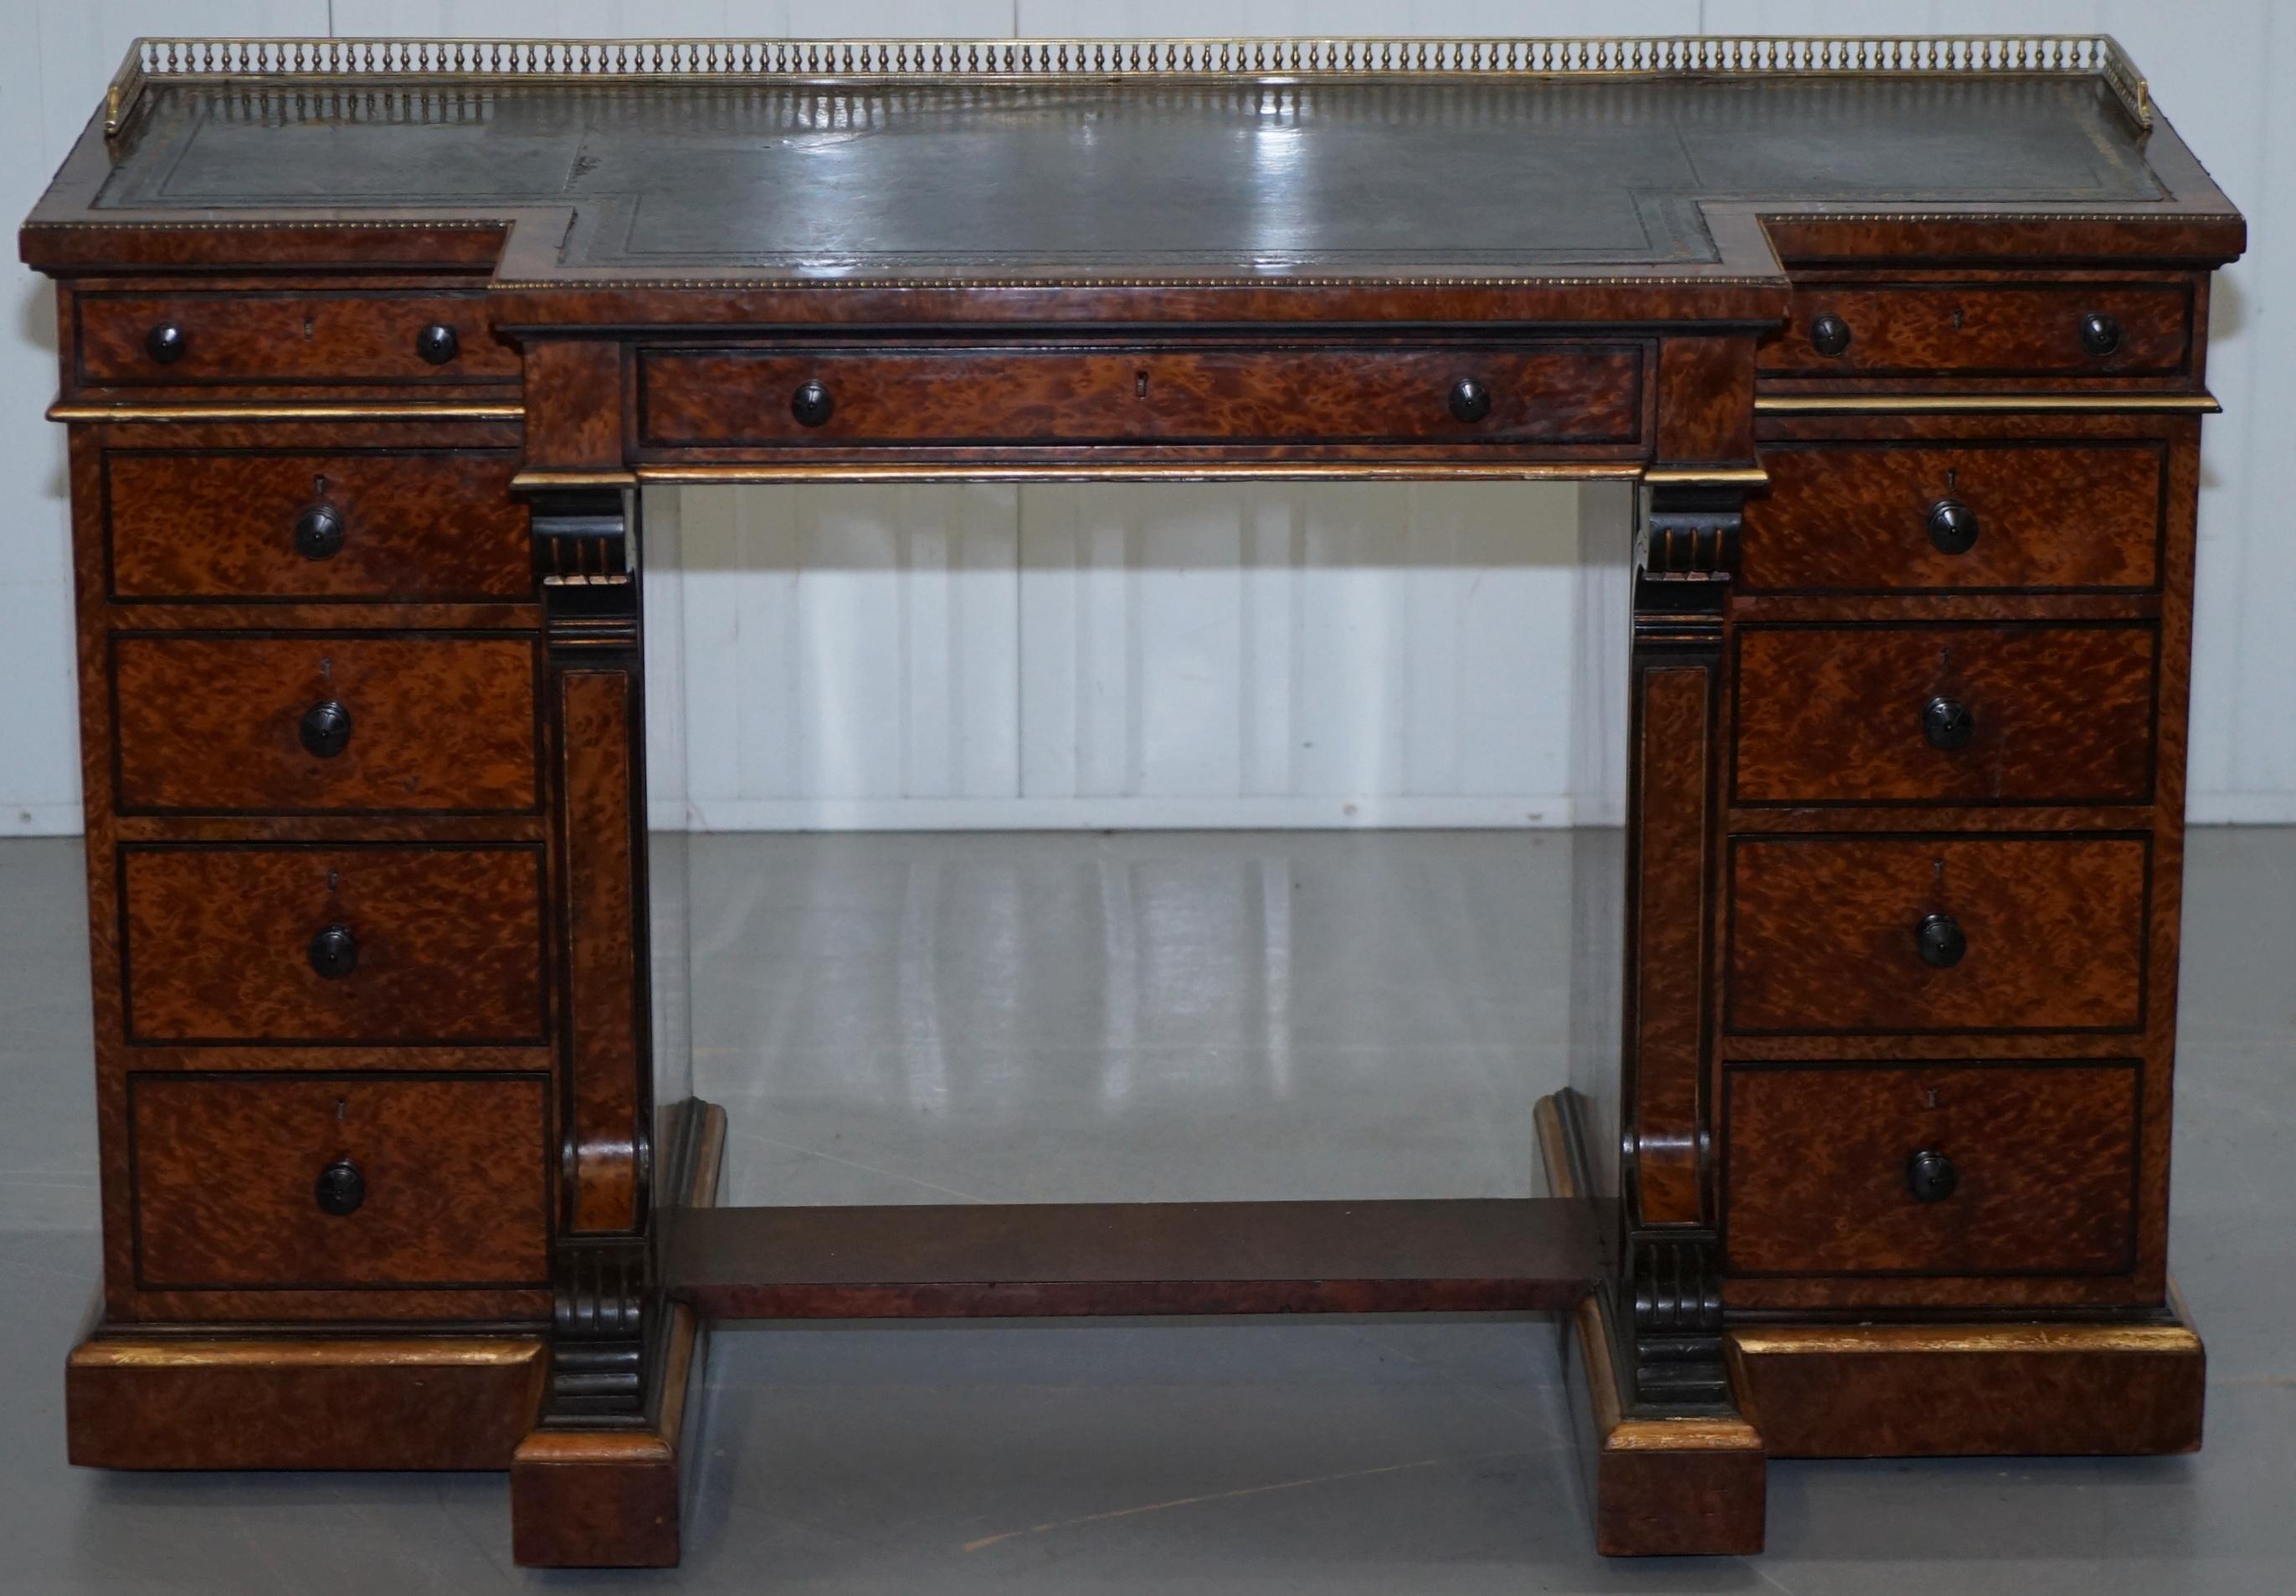 Wir freuen uns, diesen atemberaubenden und außergewöhnlich seltenen Schreibtisch der Gillow Library mit Messing-Galerie aus Amboyna-Holz von ca. 1852-1857 zum Verkauf anbieten zu können

Ein außergewöhnlich seltenes Beispiel für einen hohen